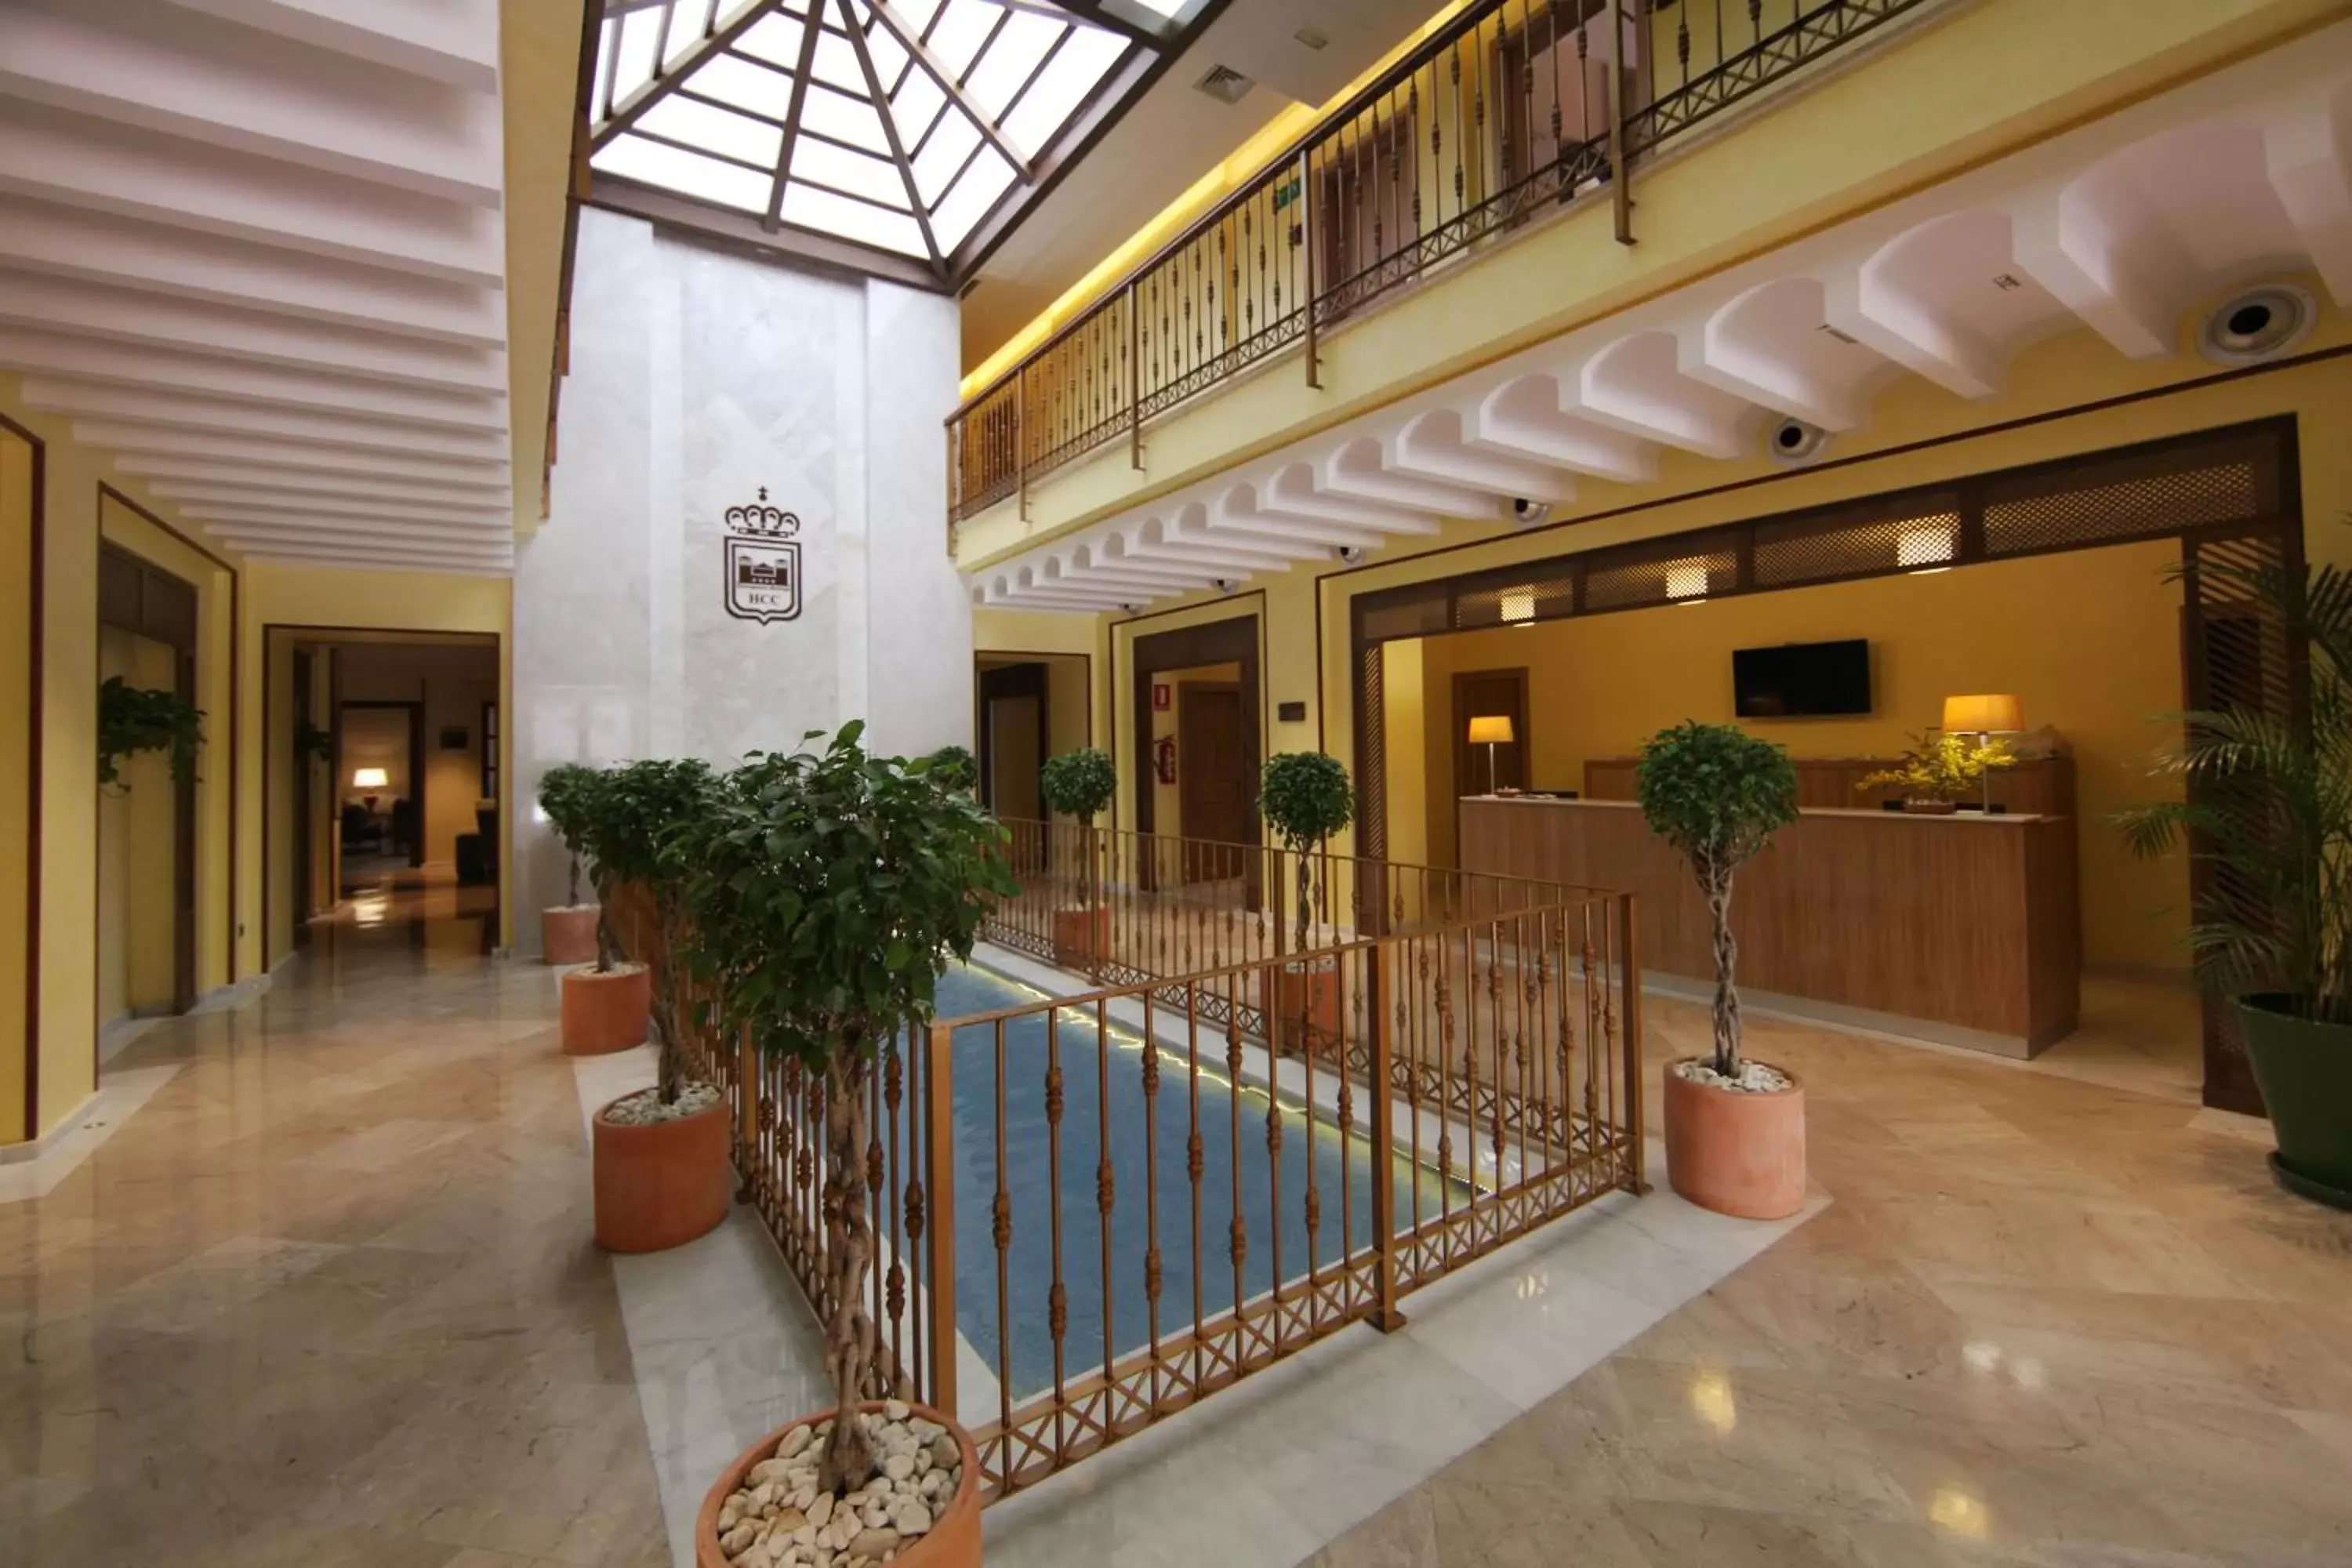 Lobby or reception in Casa Consistorial